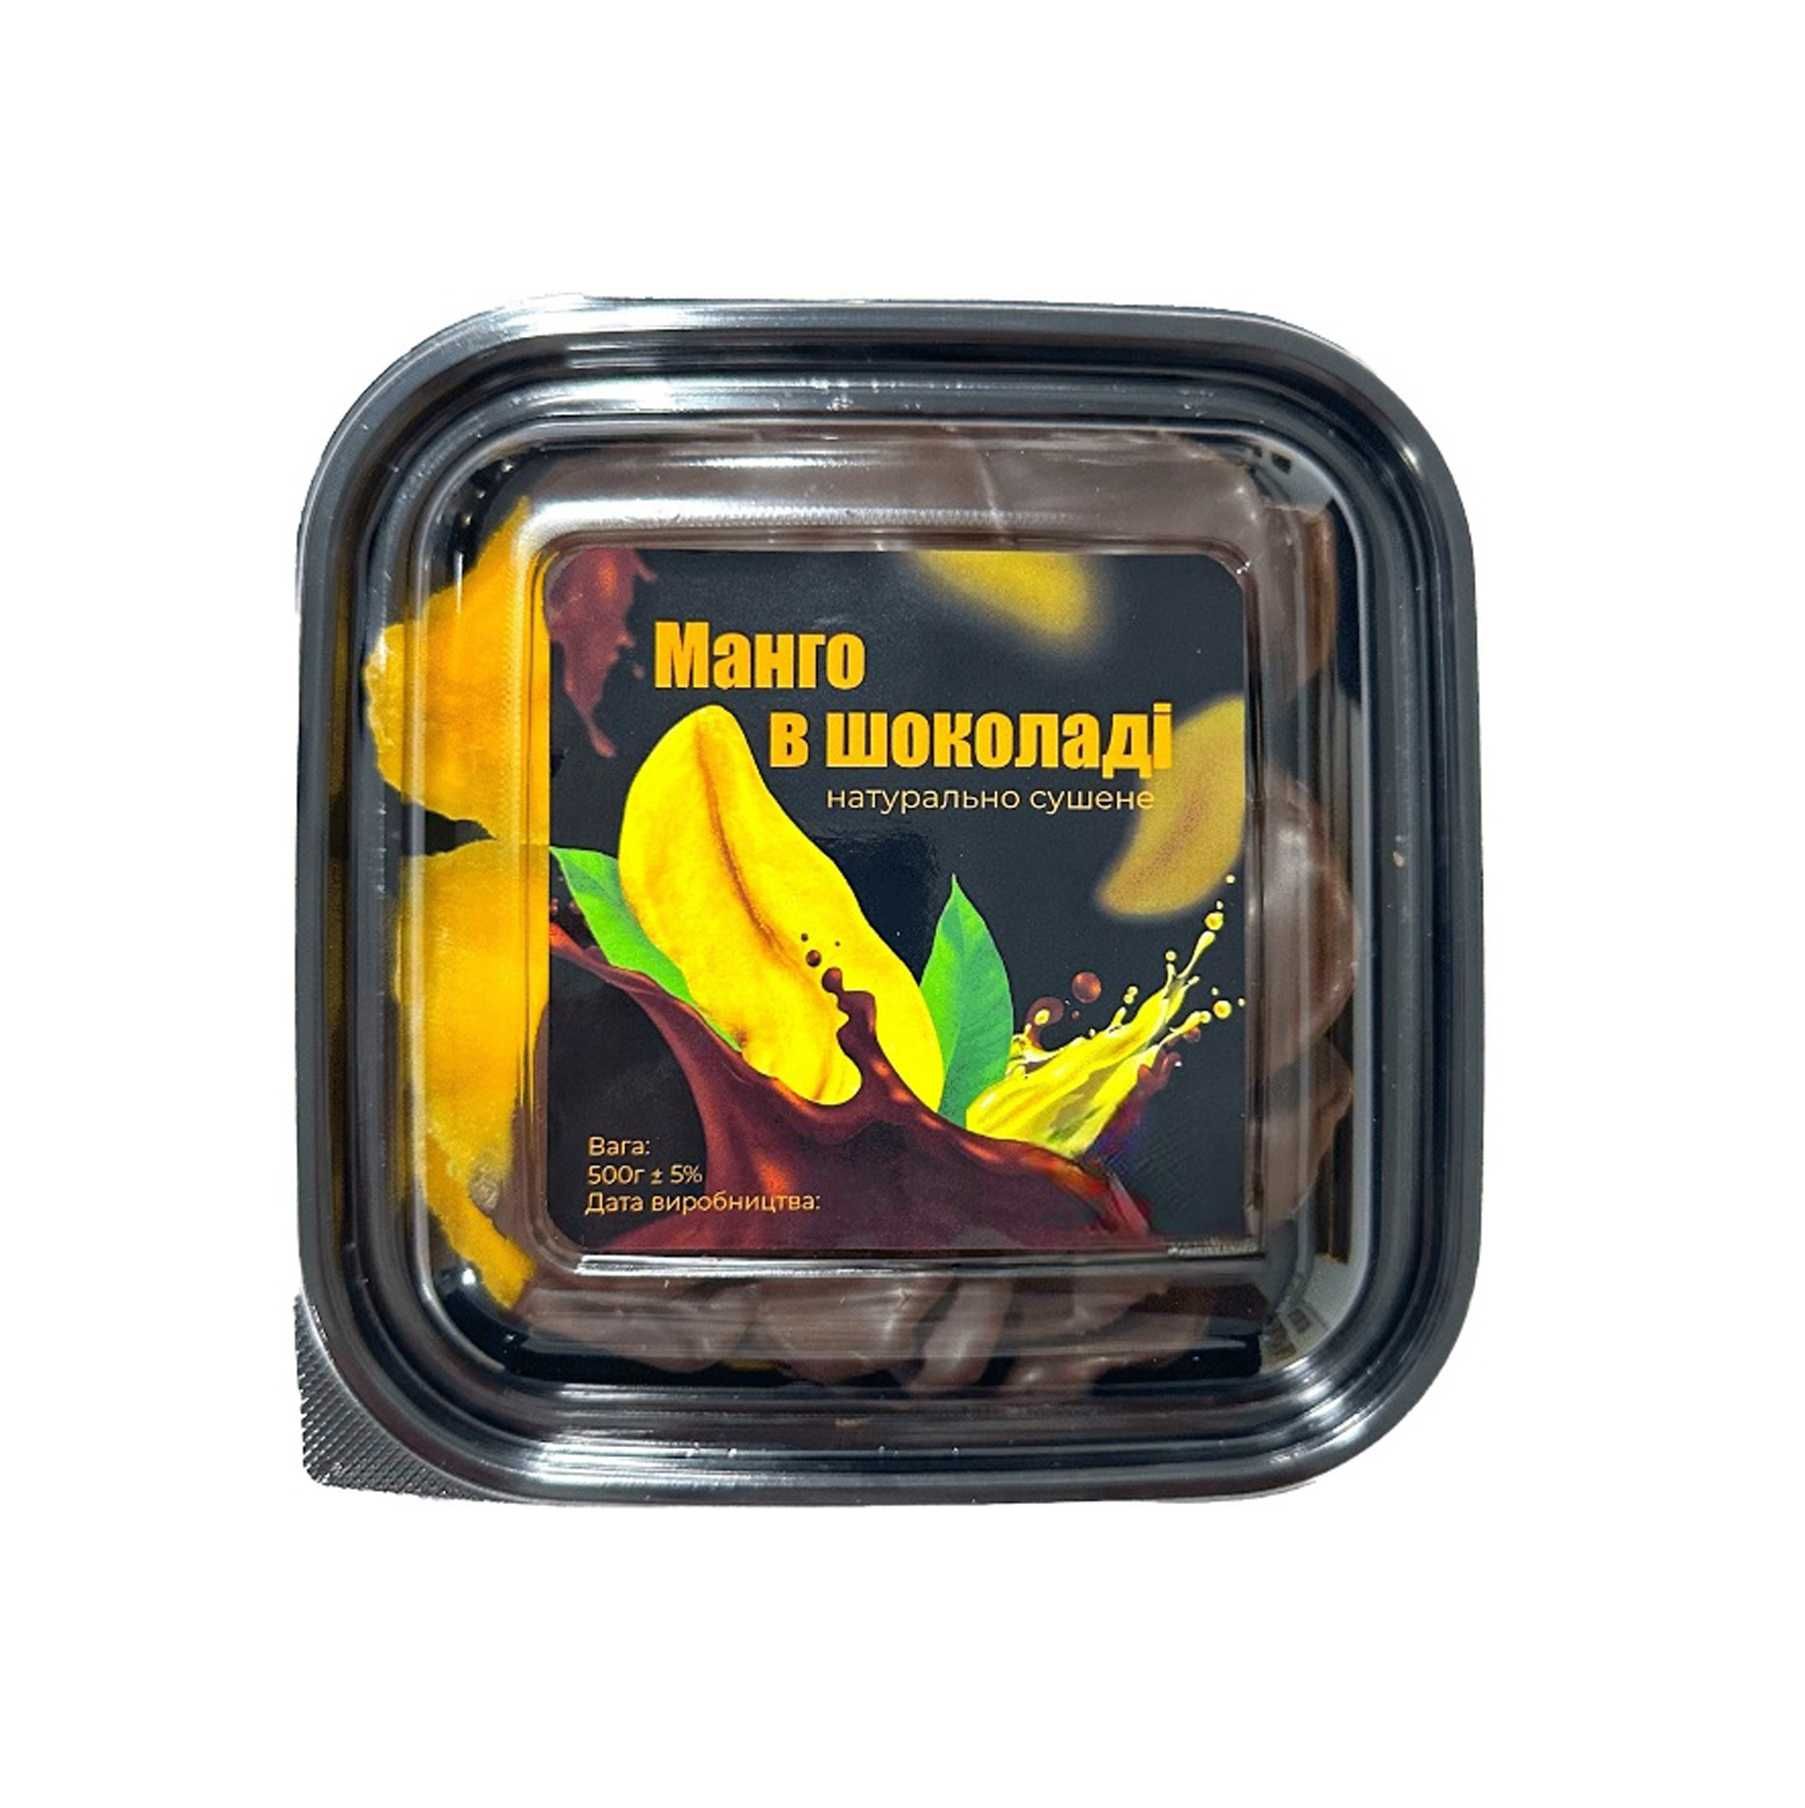 Манго в шоколаде натуральное сушеное 500 грамм (упаковка)